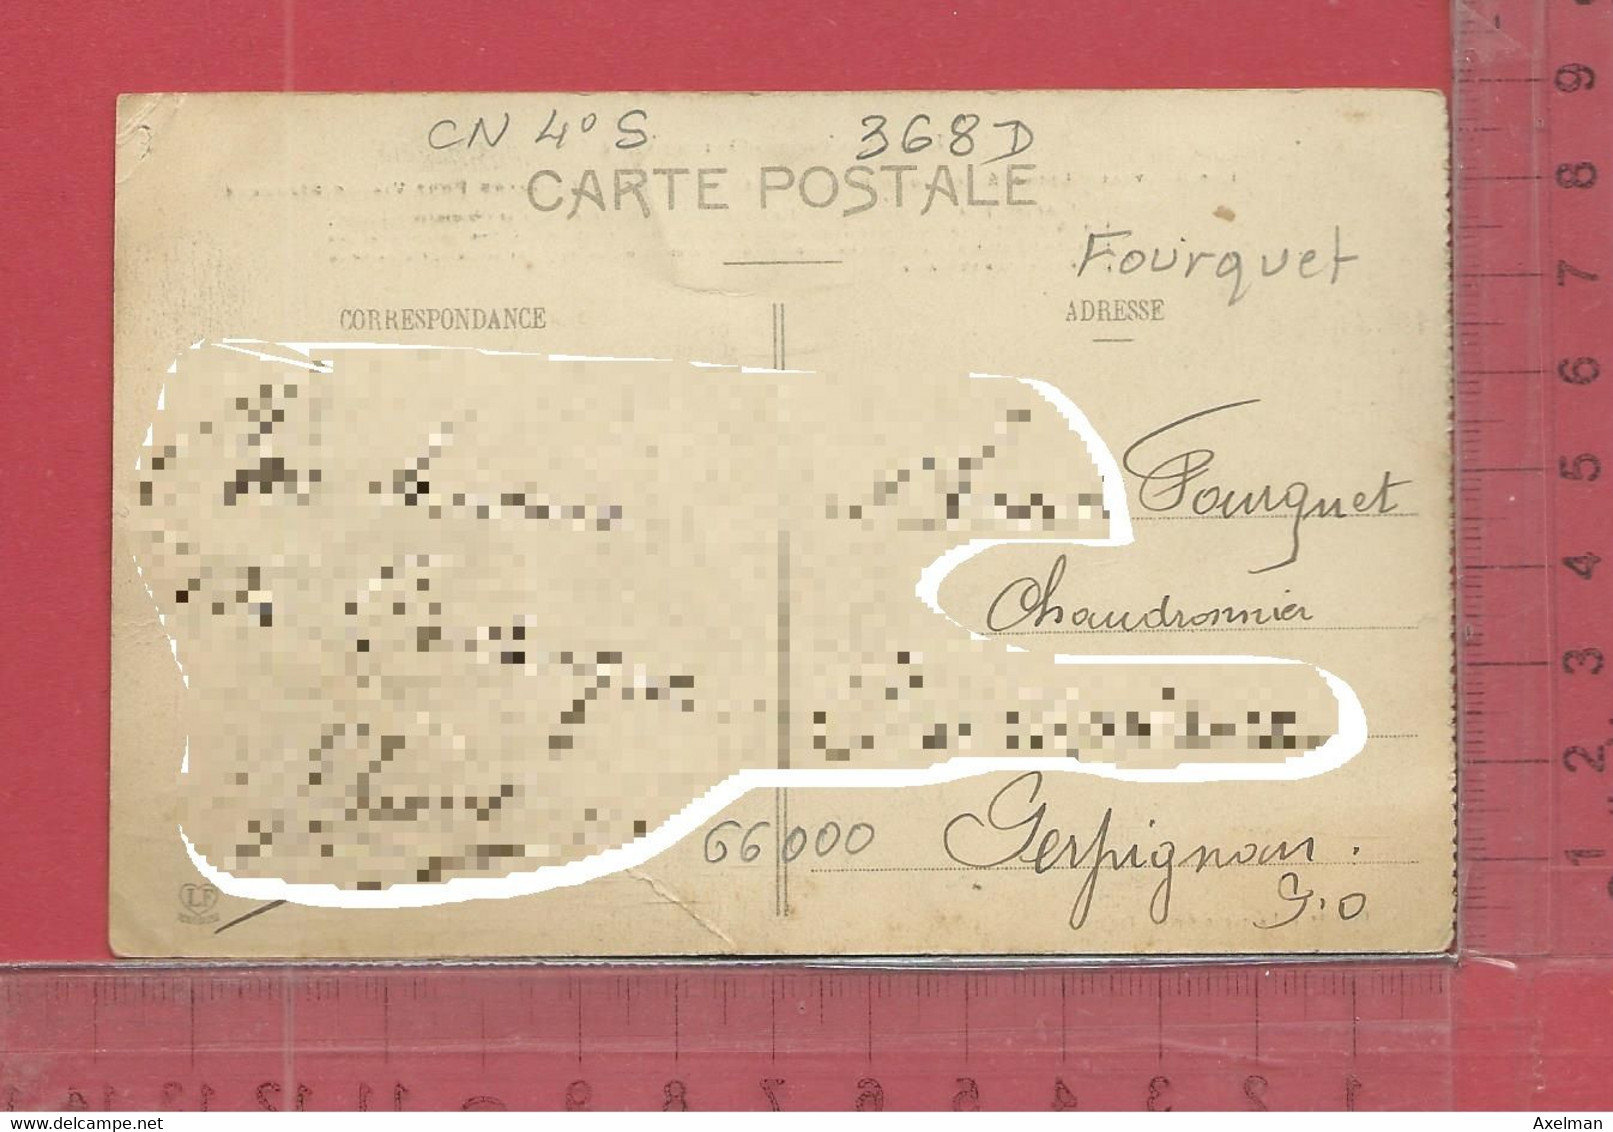 CARTE NOMINATIVE : FOURQUET ( Chaudronnier )  à  66000  Perpignan - Genealogy